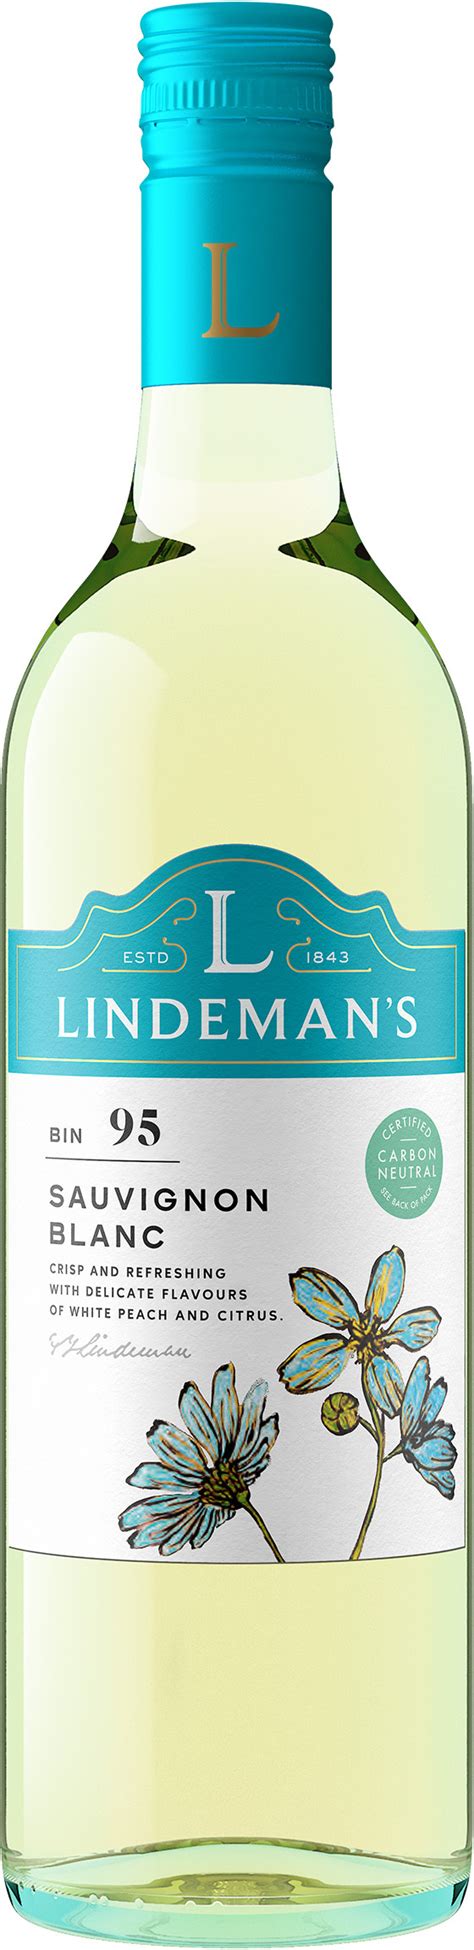 Buy Lindemans Bin 95 Sauvignon Blanc 750ml Online